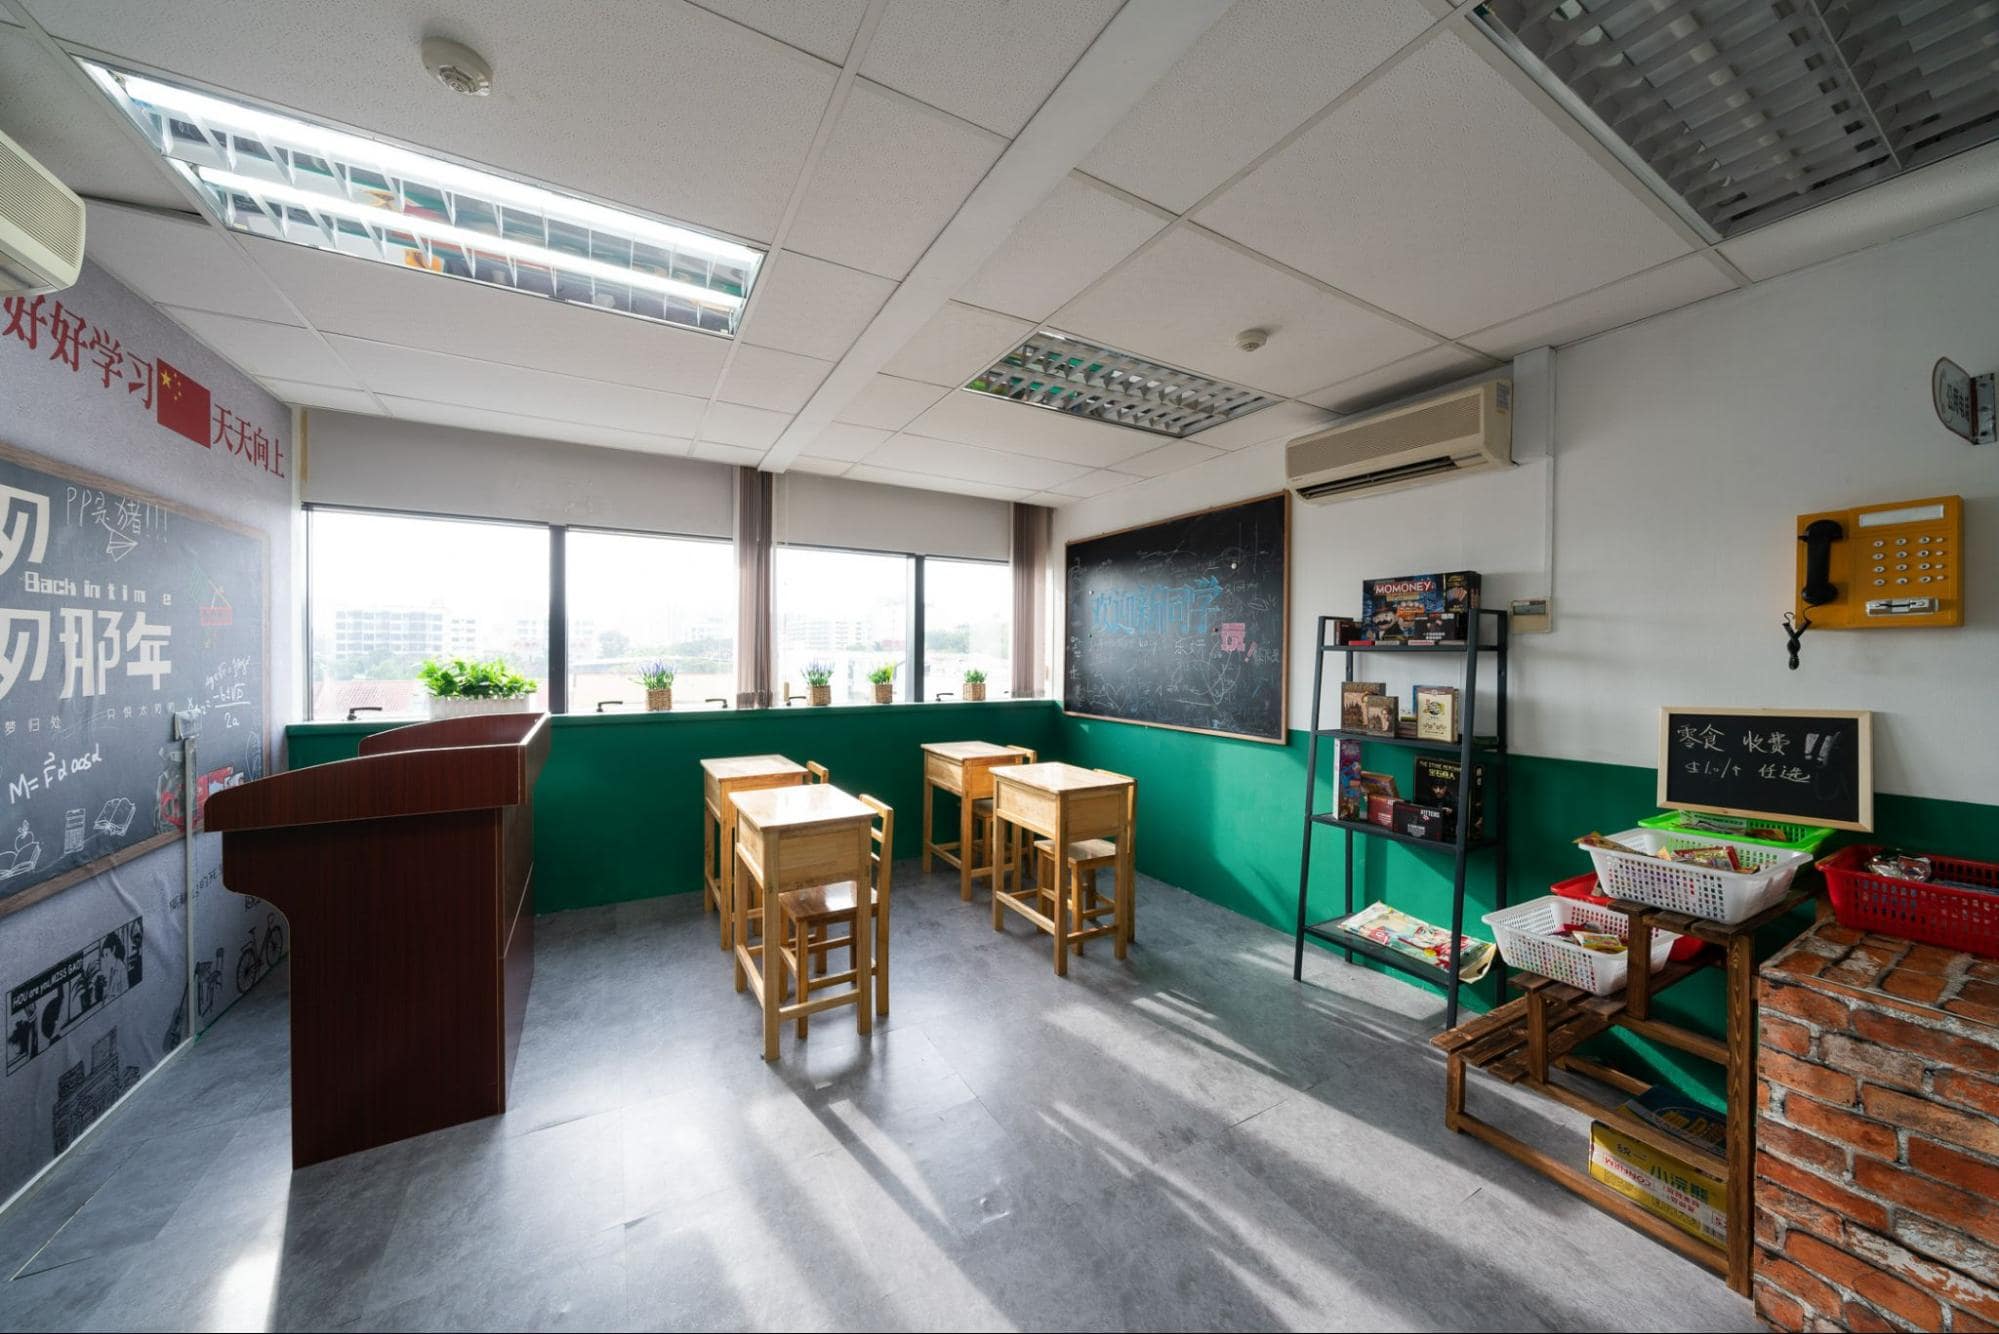 iWan Selfie Studio - Classroom Tuckshop Room